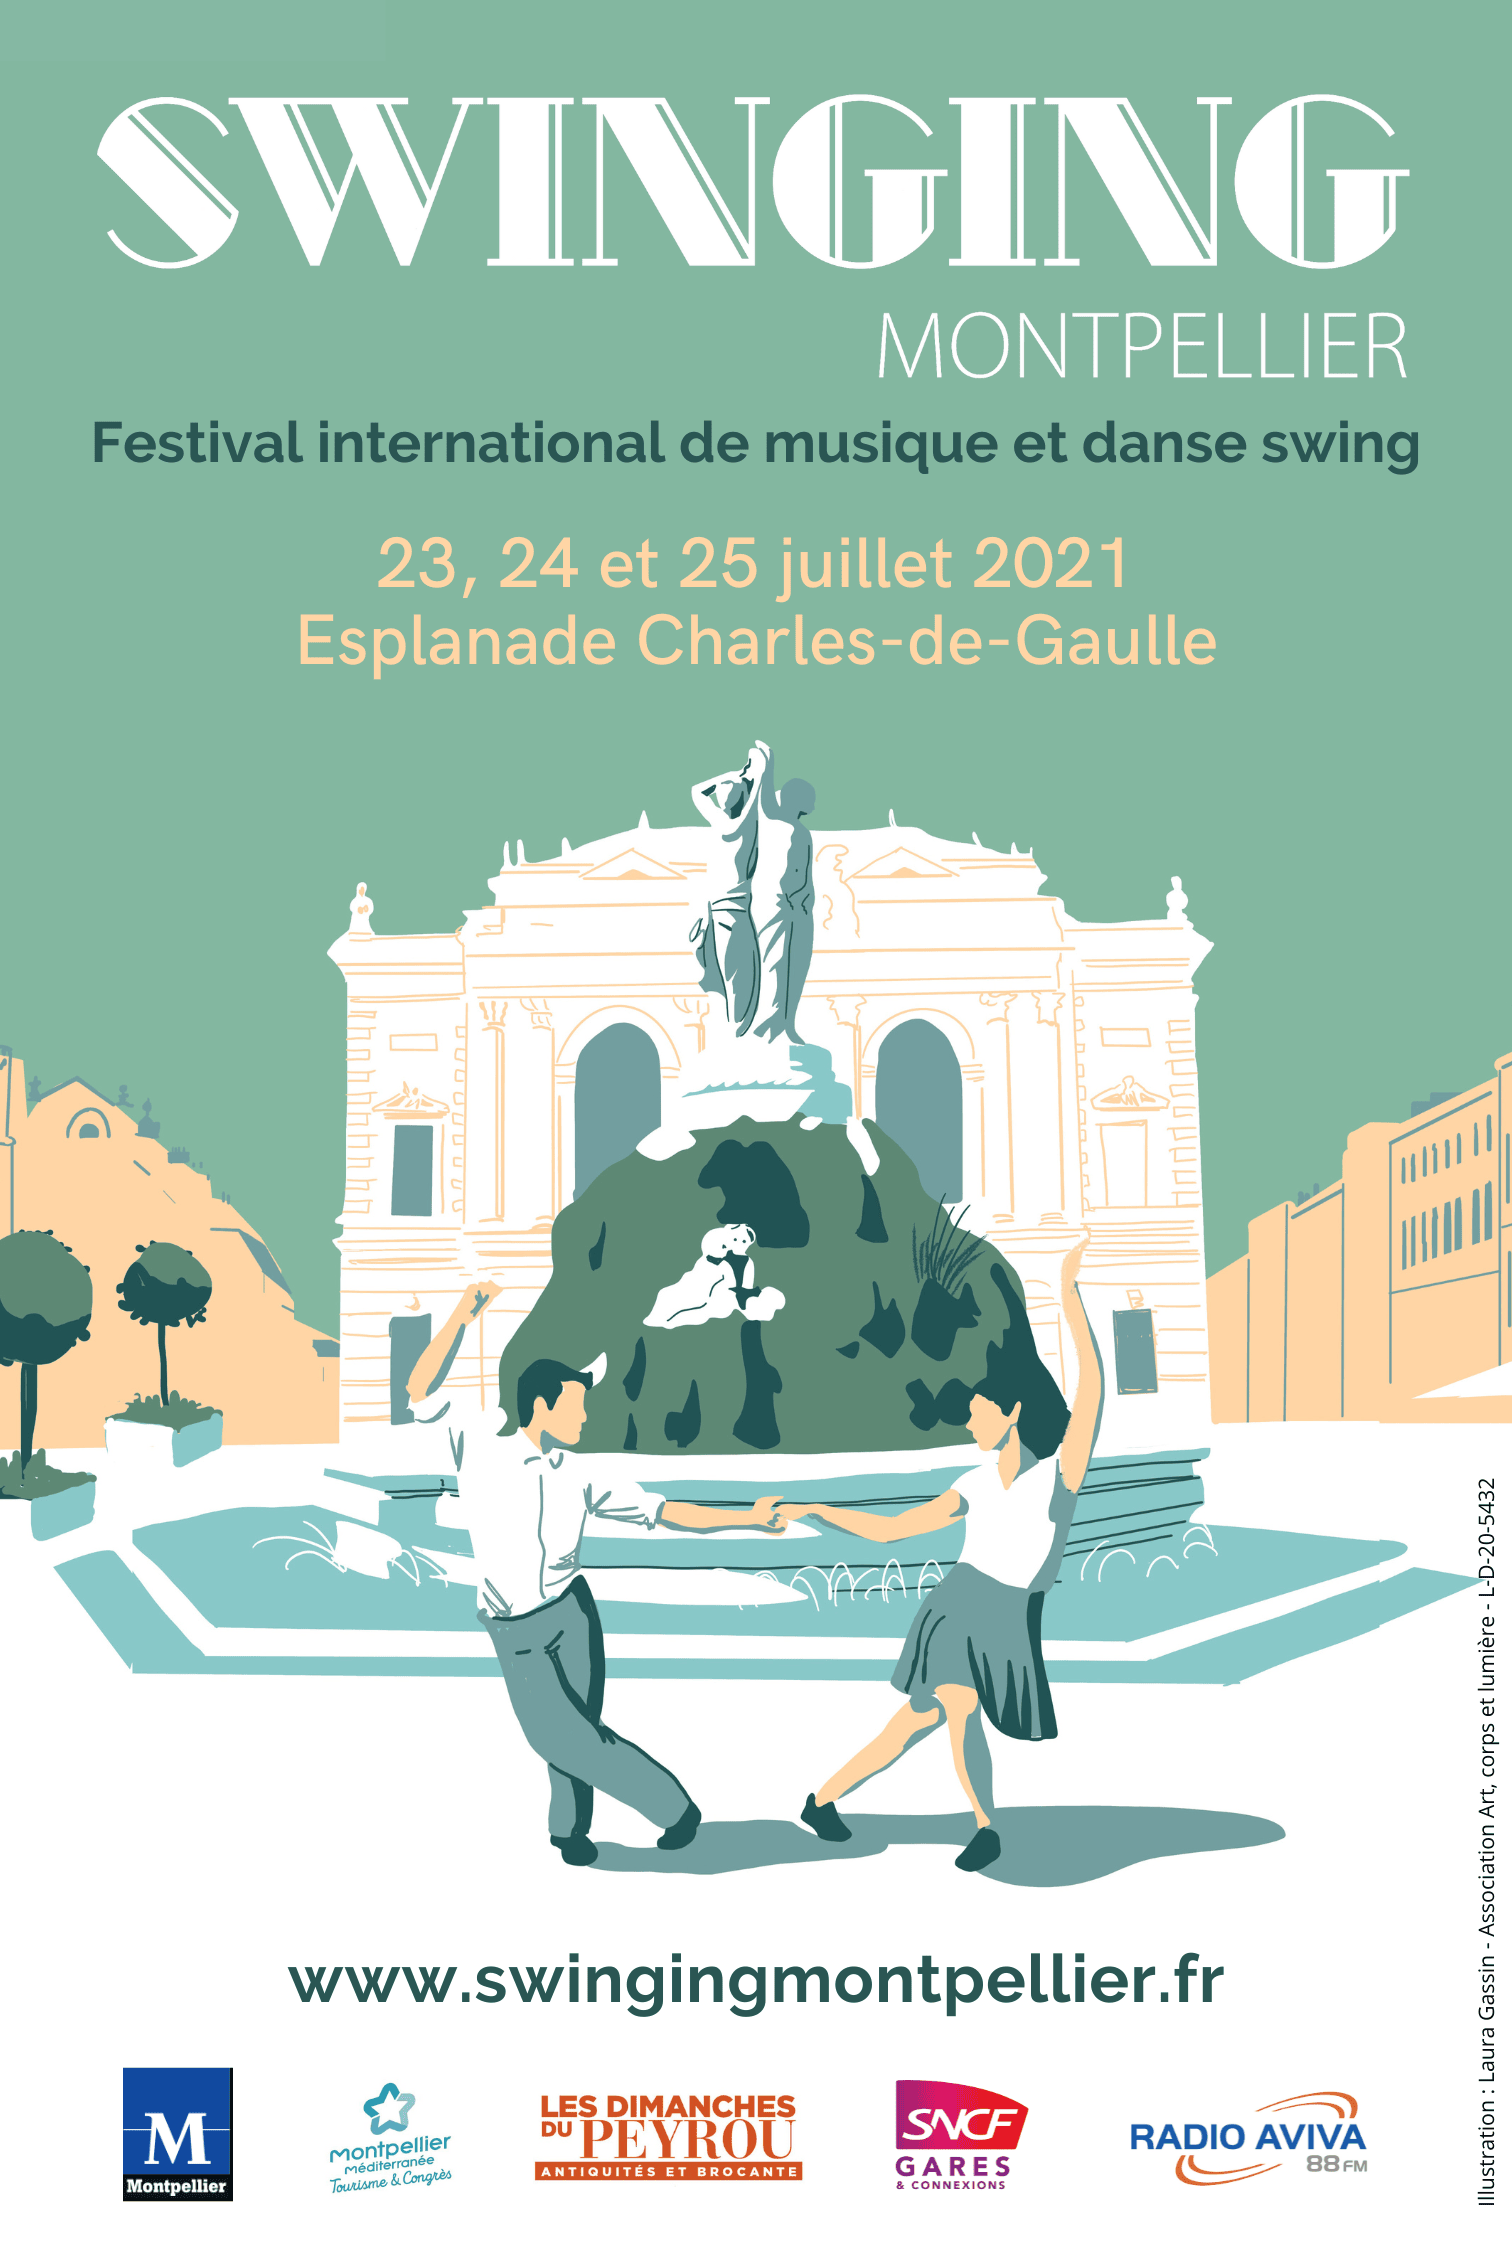 Affiche officelle 2021 du Festival international de musiques et de danses swing , Swinging Montpellier